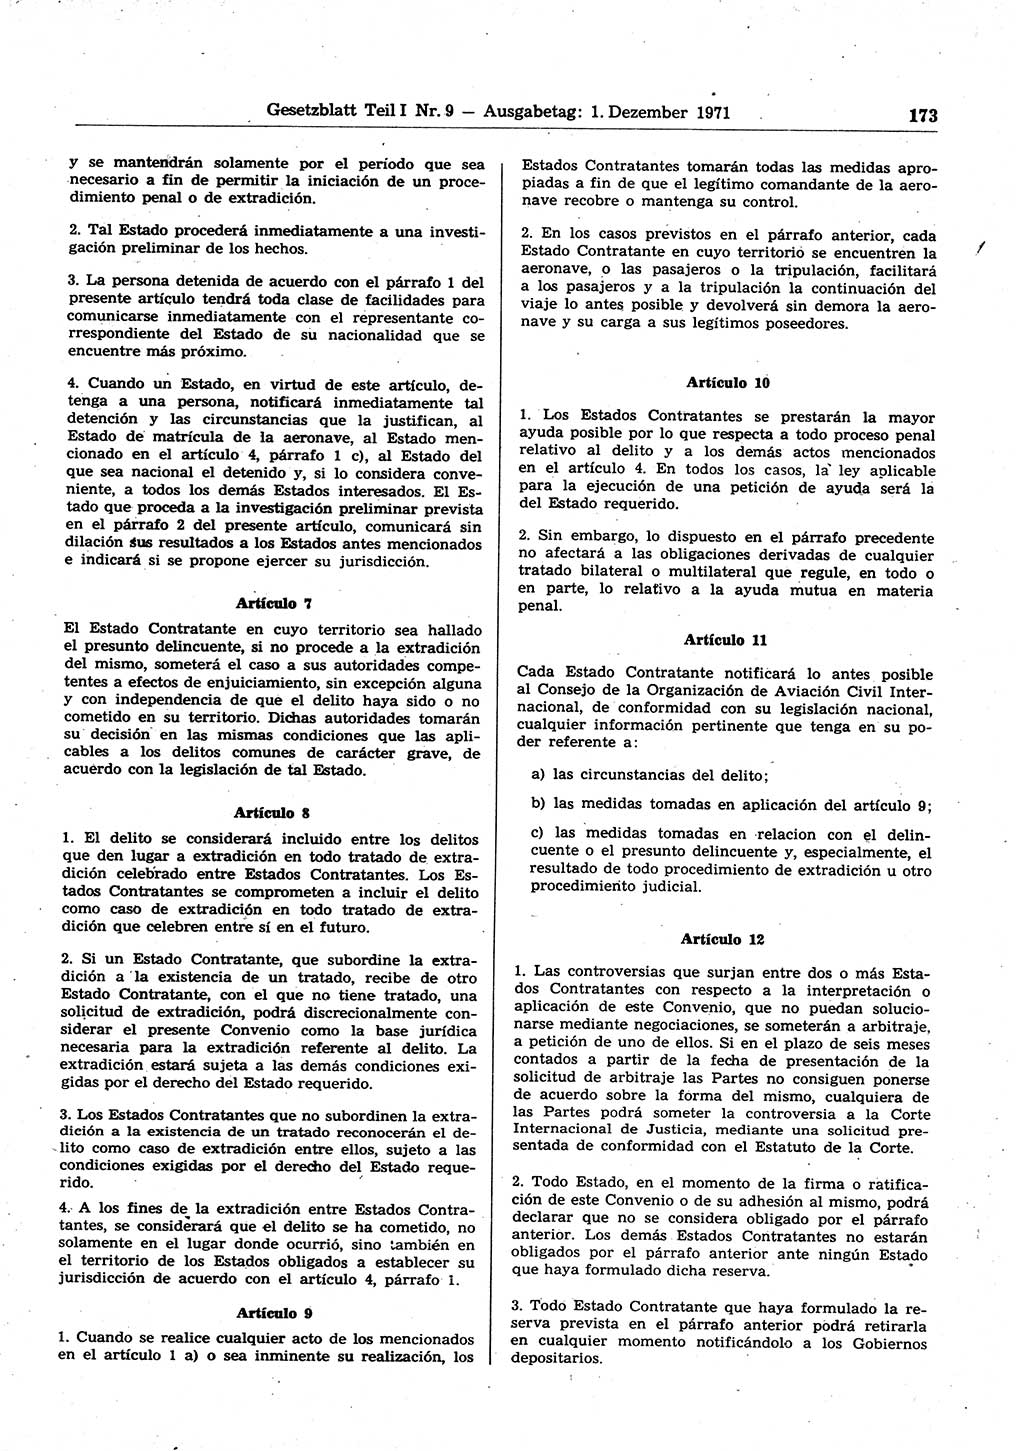 Gesetzblatt (GBl.) der Deutschen Demokratischen Republik (DDR) Teil Ⅰ 1971, Seite 173 (GBl. DDR Ⅰ 1971, S. 173)